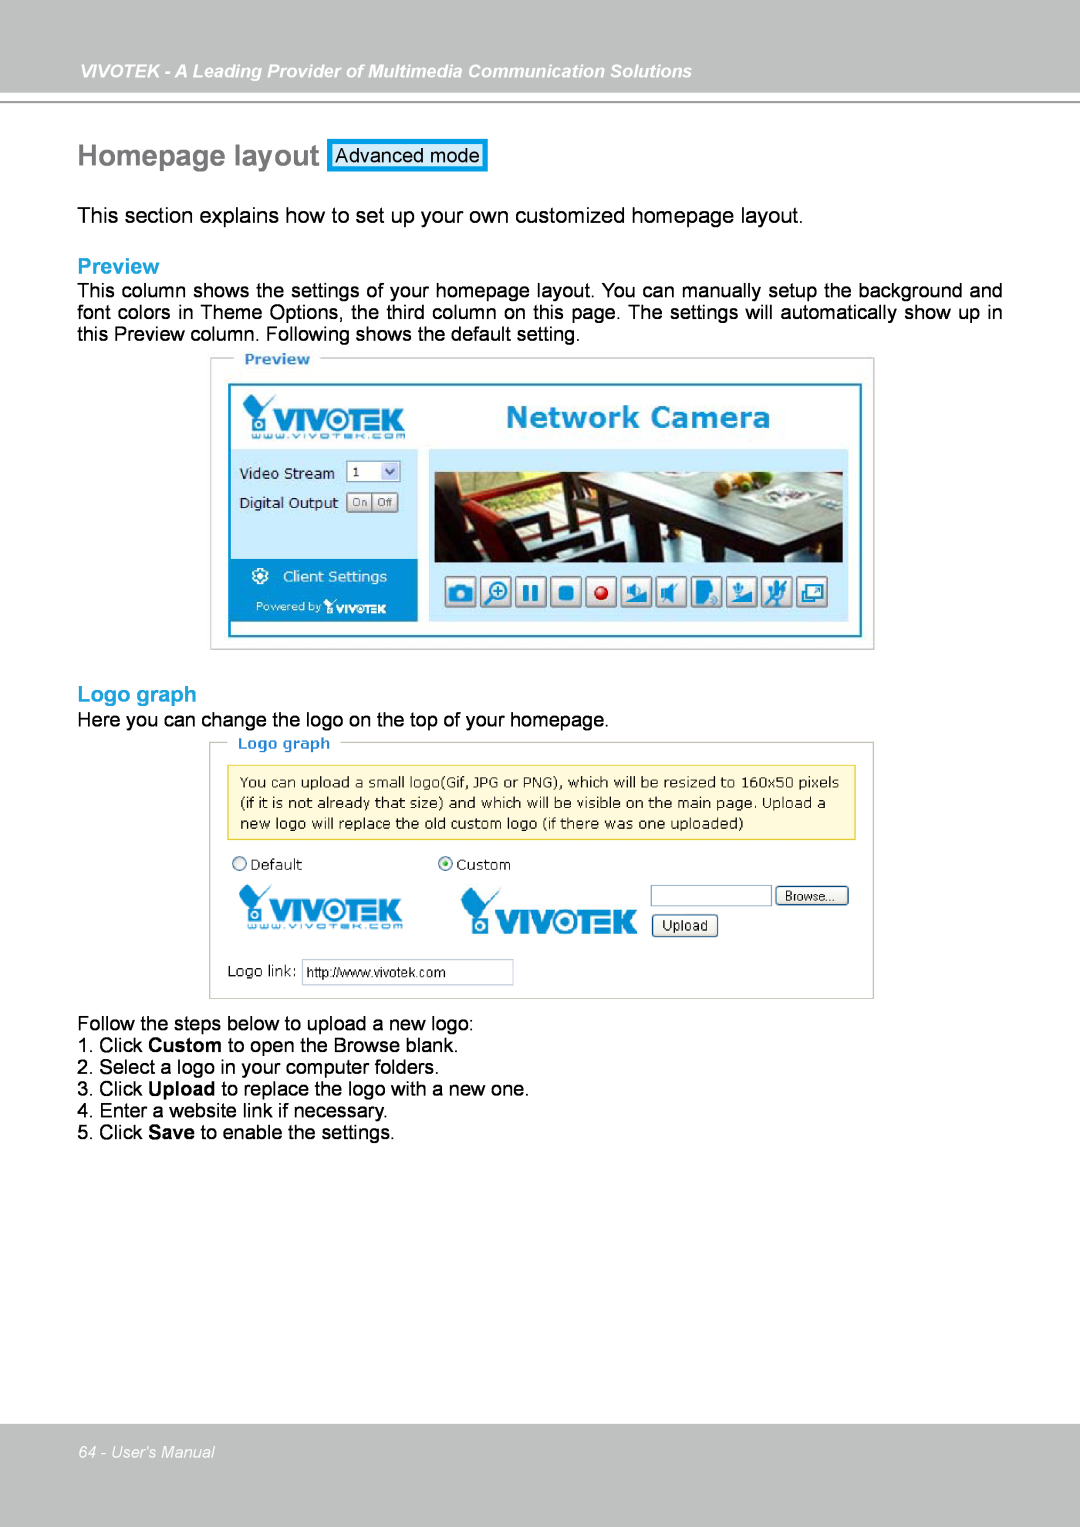 Vivotek FD7141(V) manual Homepage layout, Preview, Logo graph 